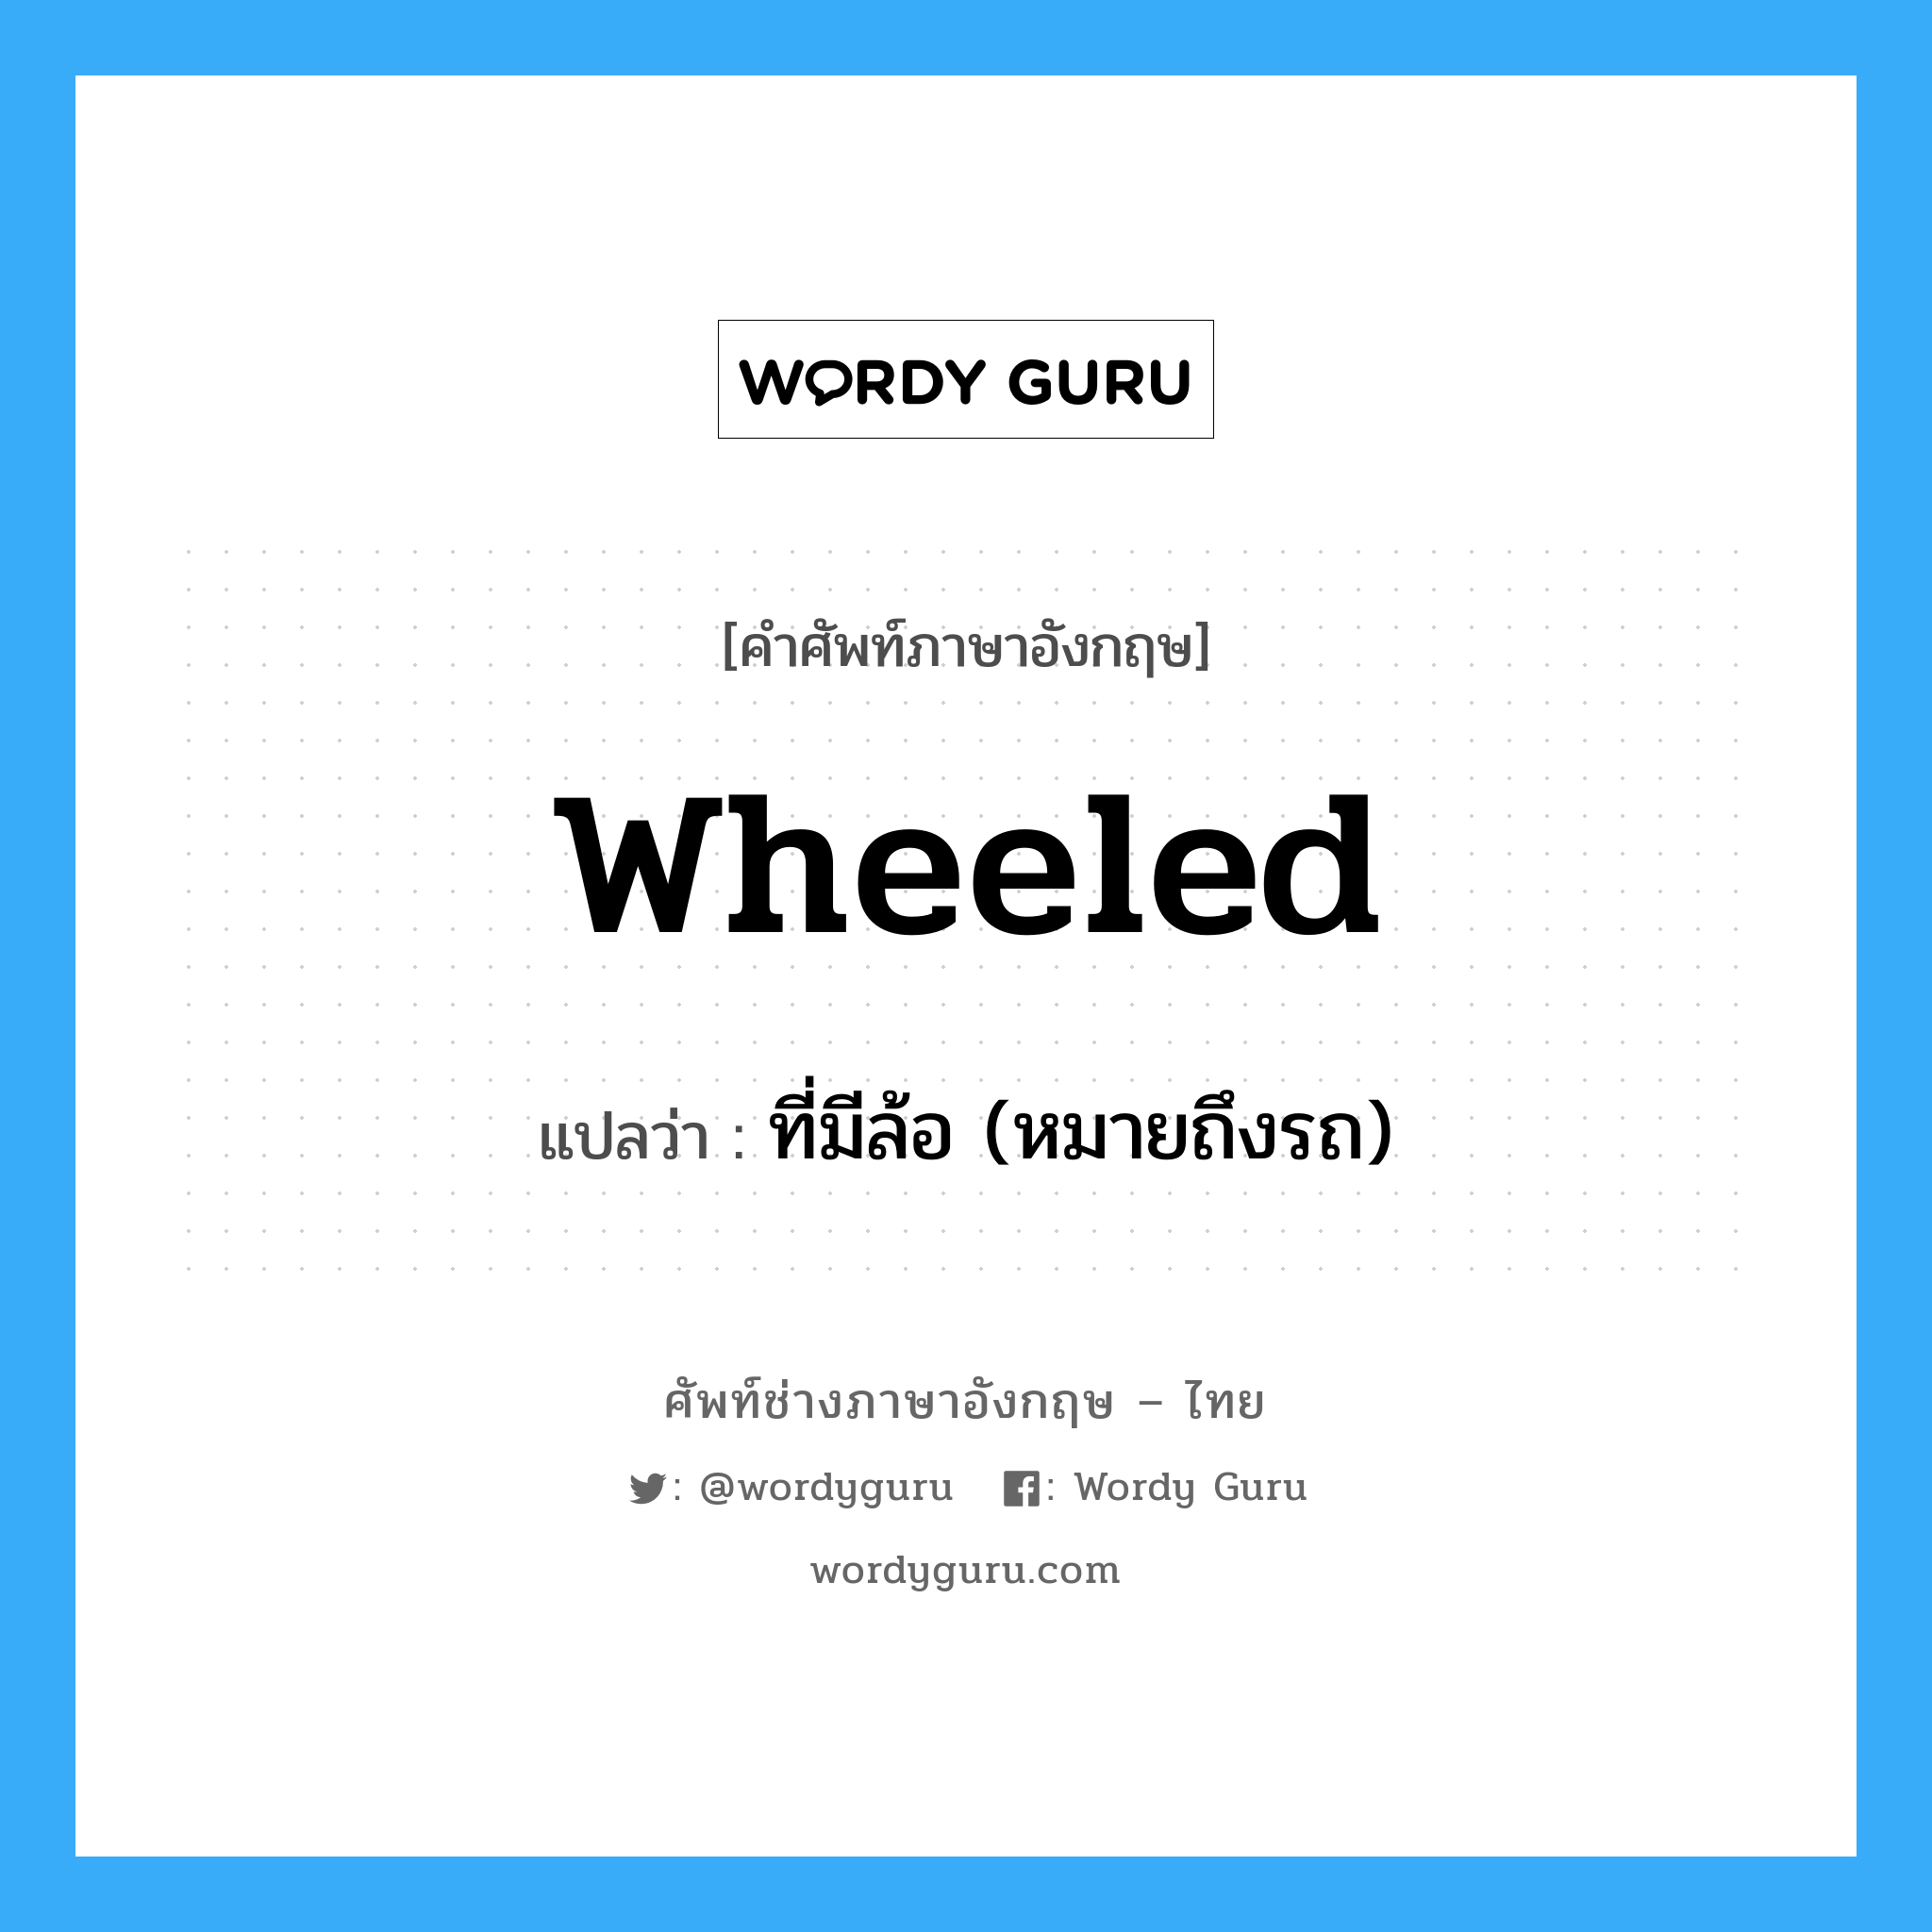 ที่มีล้อ (หมายถึงรถ) ภาษาอังกฤษ?, คำศัพท์ช่างภาษาอังกฤษ - ไทย ที่มีล้อ (หมายถึงรถ) คำศัพท์ภาษาอังกฤษ ที่มีล้อ (หมายถึงรถ) แปลว่า wheeled